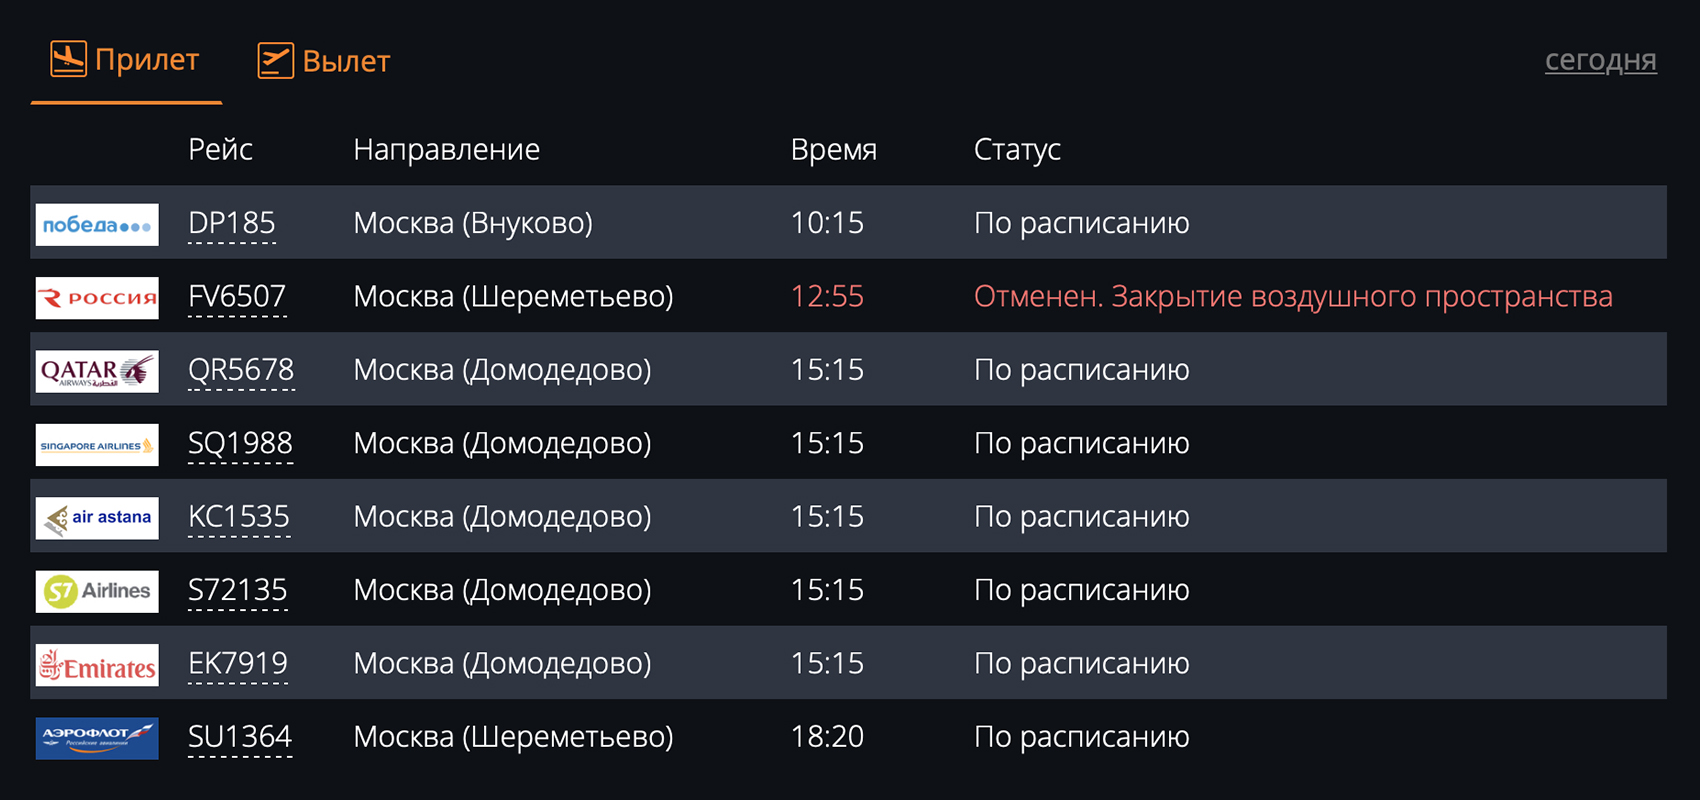 Сообщение на сайте аэропорта Ставрополь об отмене рейса из⁠-⁠за закрытия воздушного пространства. Источник: flystw.com